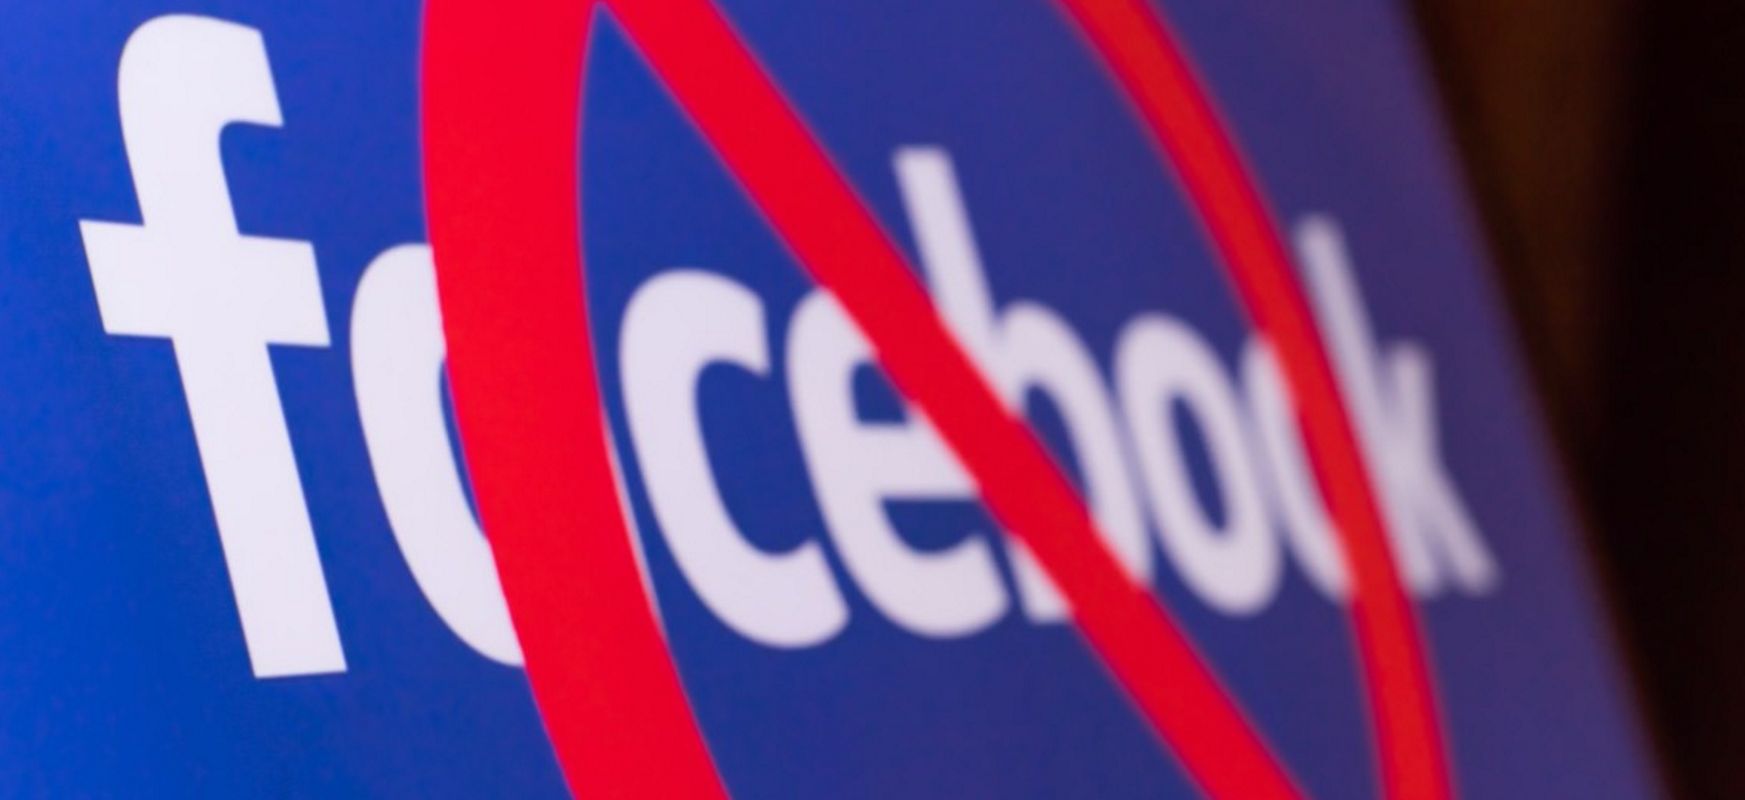 Poloniako politikariek ezin dituzte Facebookeko tresna guztiak erabili. Hau da berri on bakarra